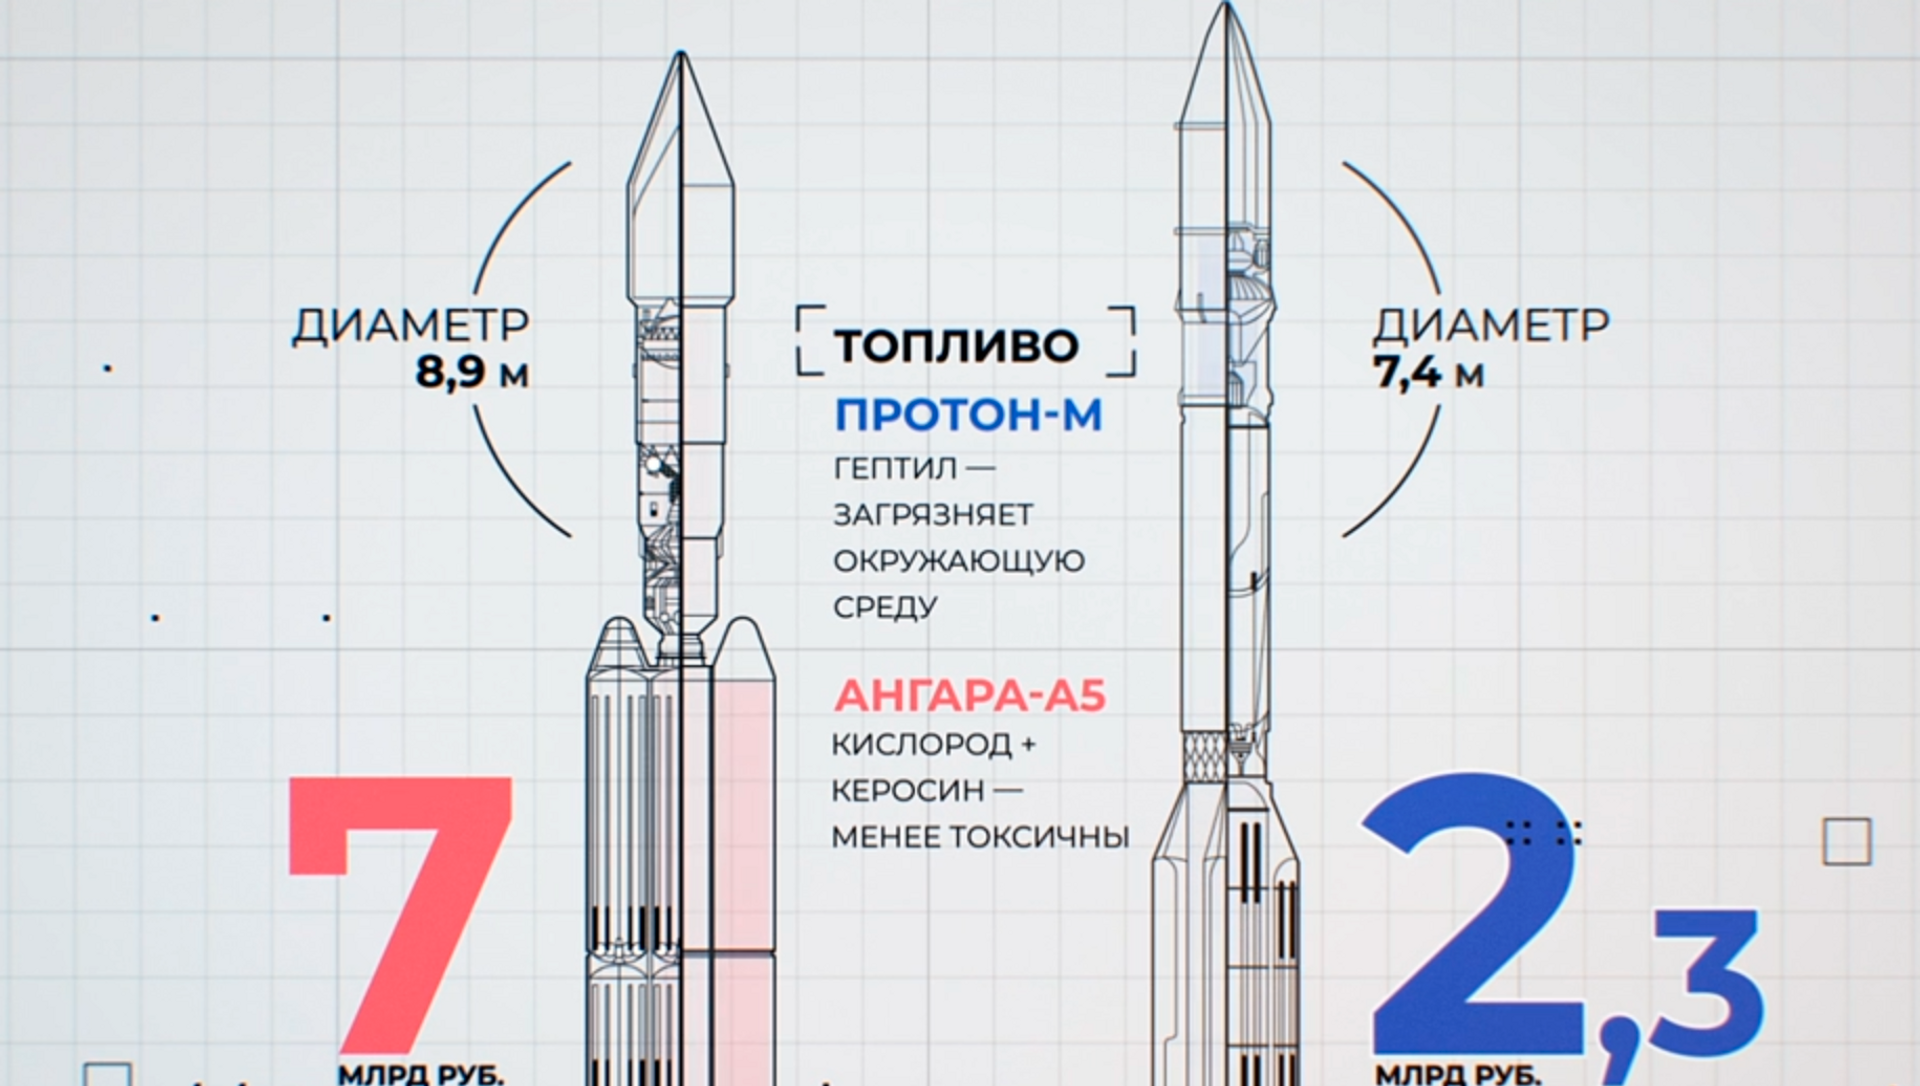 Ангара а5 размеры. Ракета-носитель "Ангара-а5". Ракета носитель Ангара а5 чертеж. Ангара-1.2 ракета-носитель схема. Ангара 1.1 ракета-носитель.